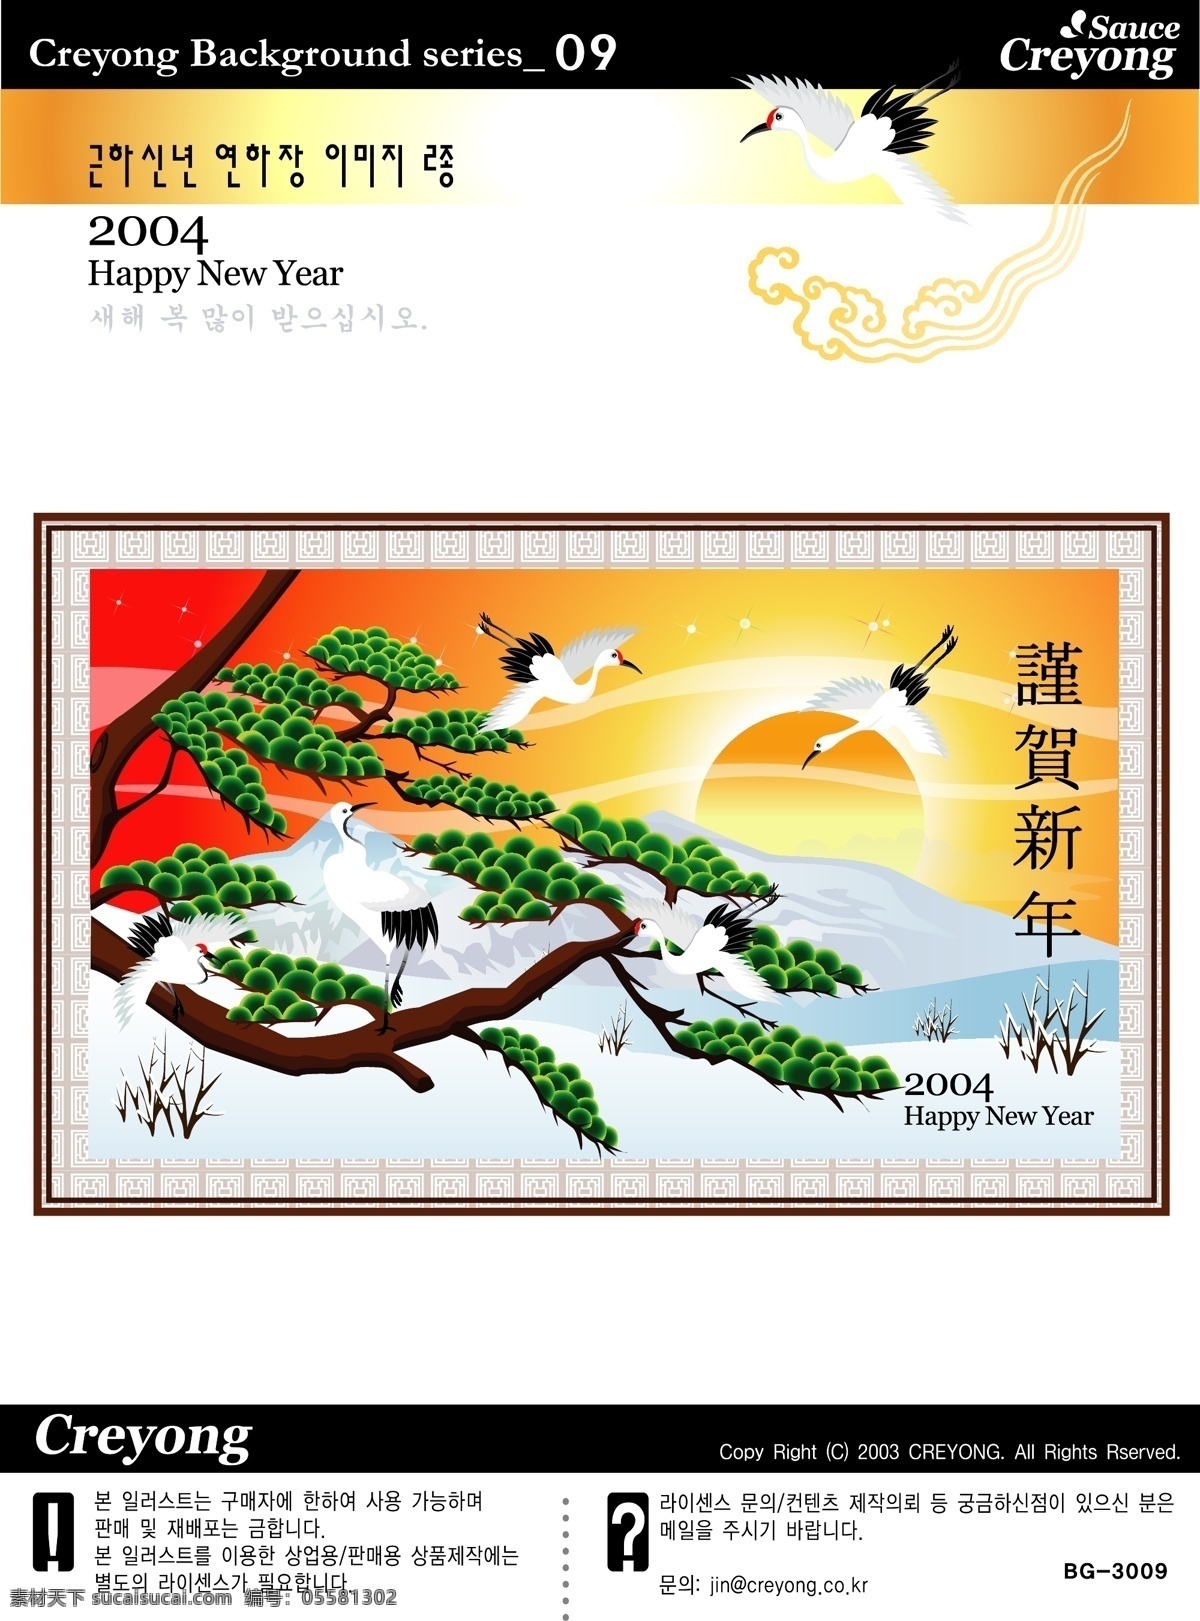 韩国 恭贺 春节 松鹤 迎新 矢量图 标识cdr 环保cdr 卡通环保 矢量素材 标签标识 其他矢量图